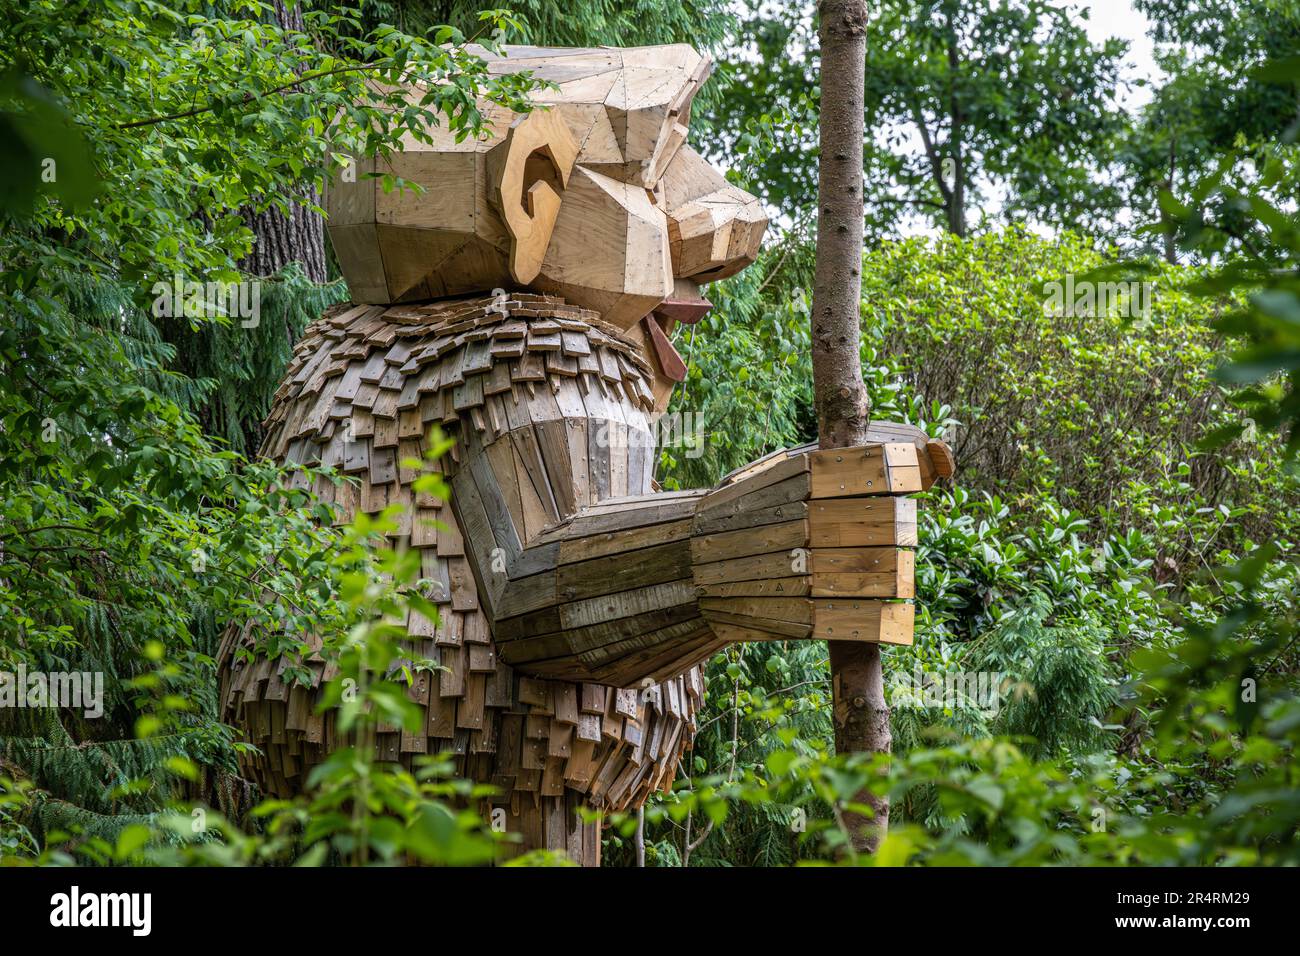 Ronja Redeye wooden sculpture by Thomas Dambo at the Atlanta Botanical ...